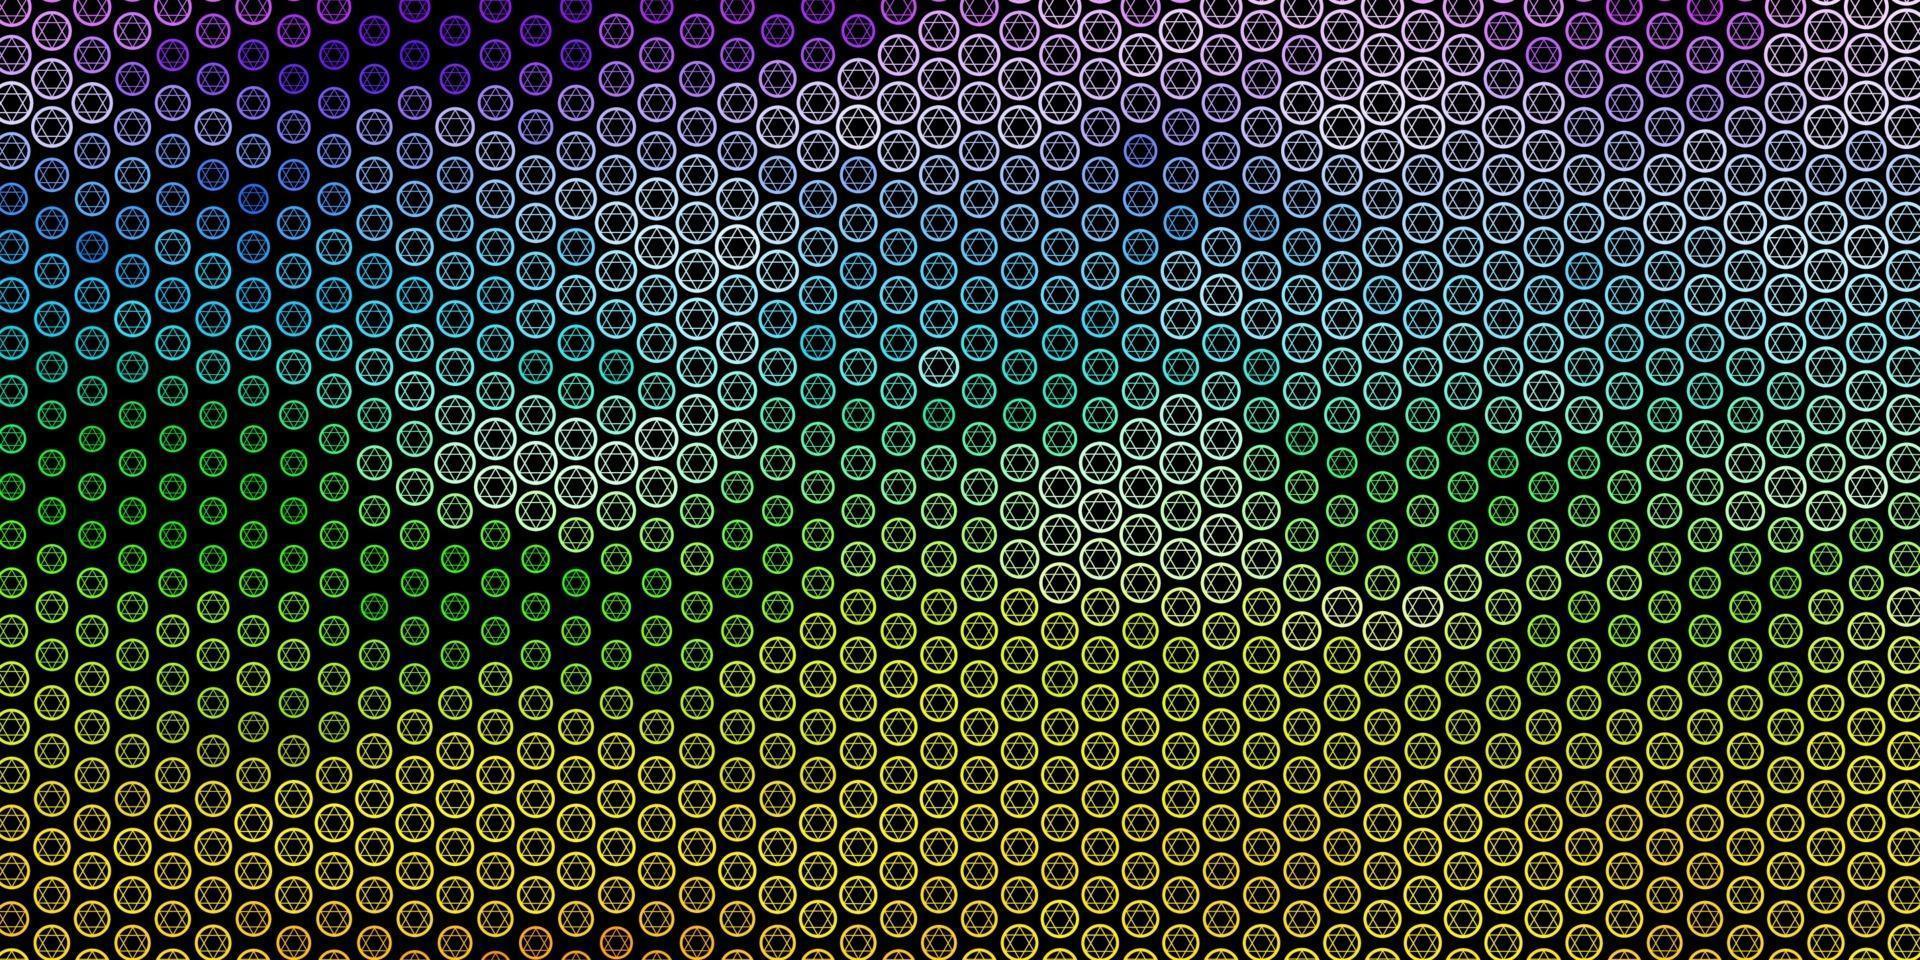 patrón de vector multicolor oscuro con elementos mágicos.